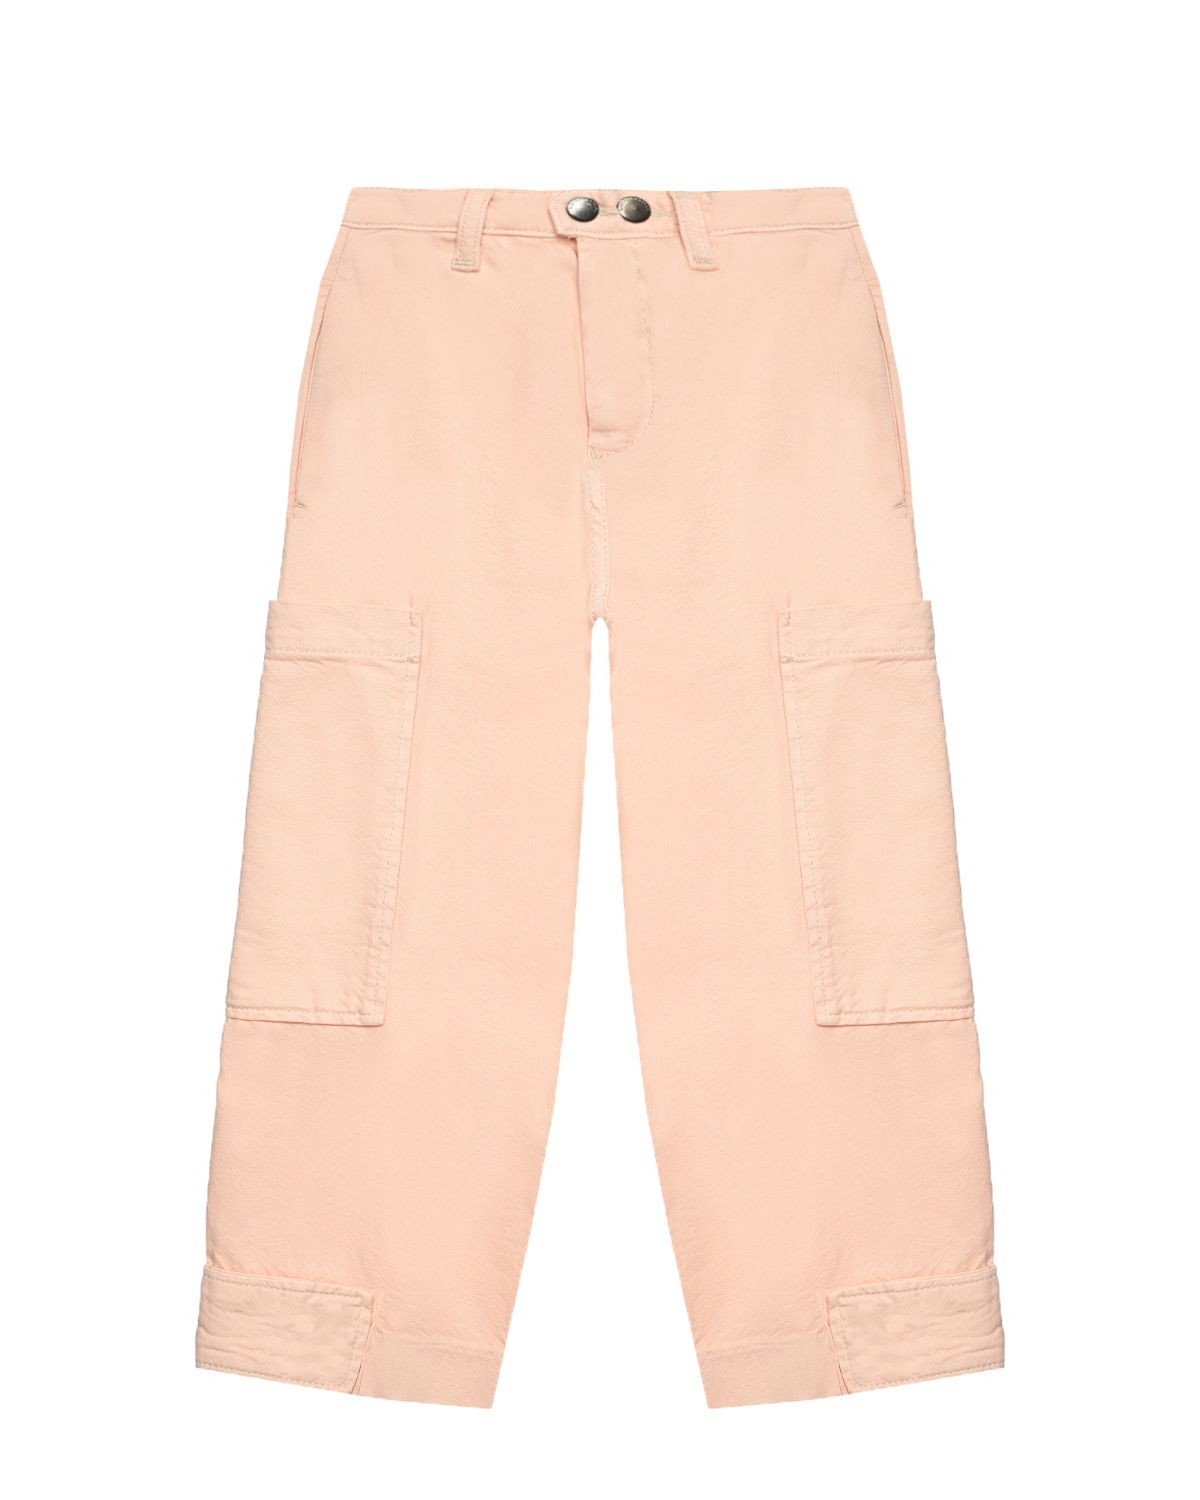 Брюки джинсовые с карманами карго, светло-розовые Emporio Armani, размер 104, цвет розовый - фото 1